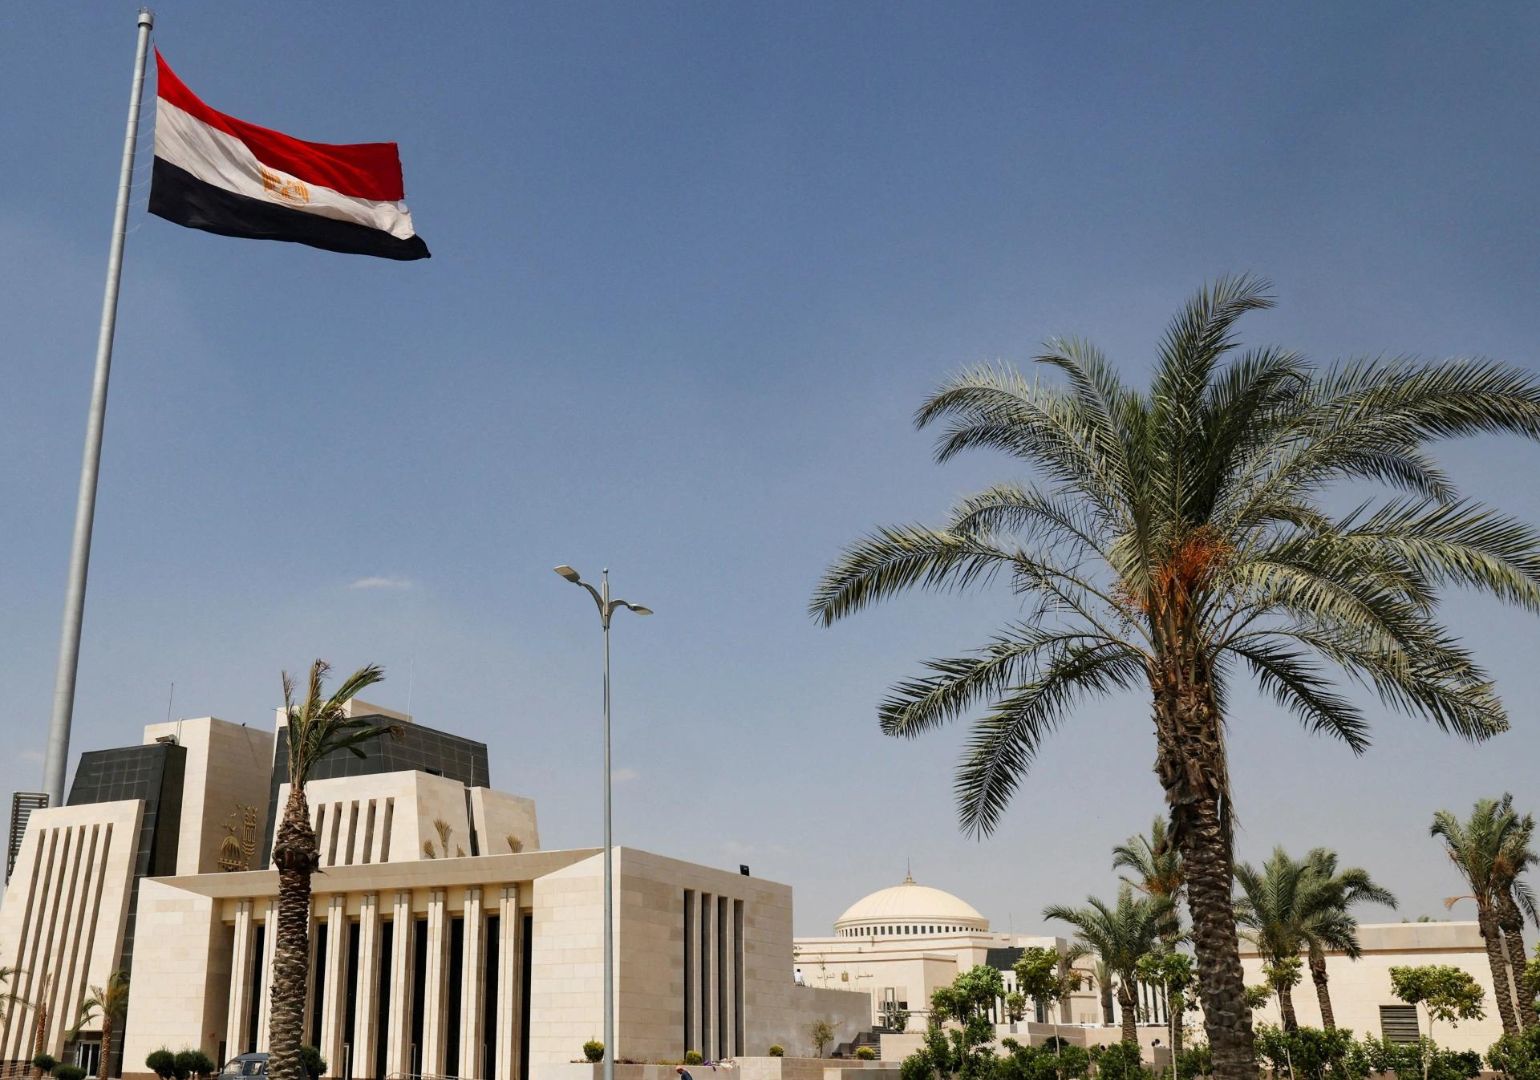 ეგვიპტემ პრივატიზაციის გზით $1.9 მილიარდის სახელმწიფო აქტივები გაასხვისა